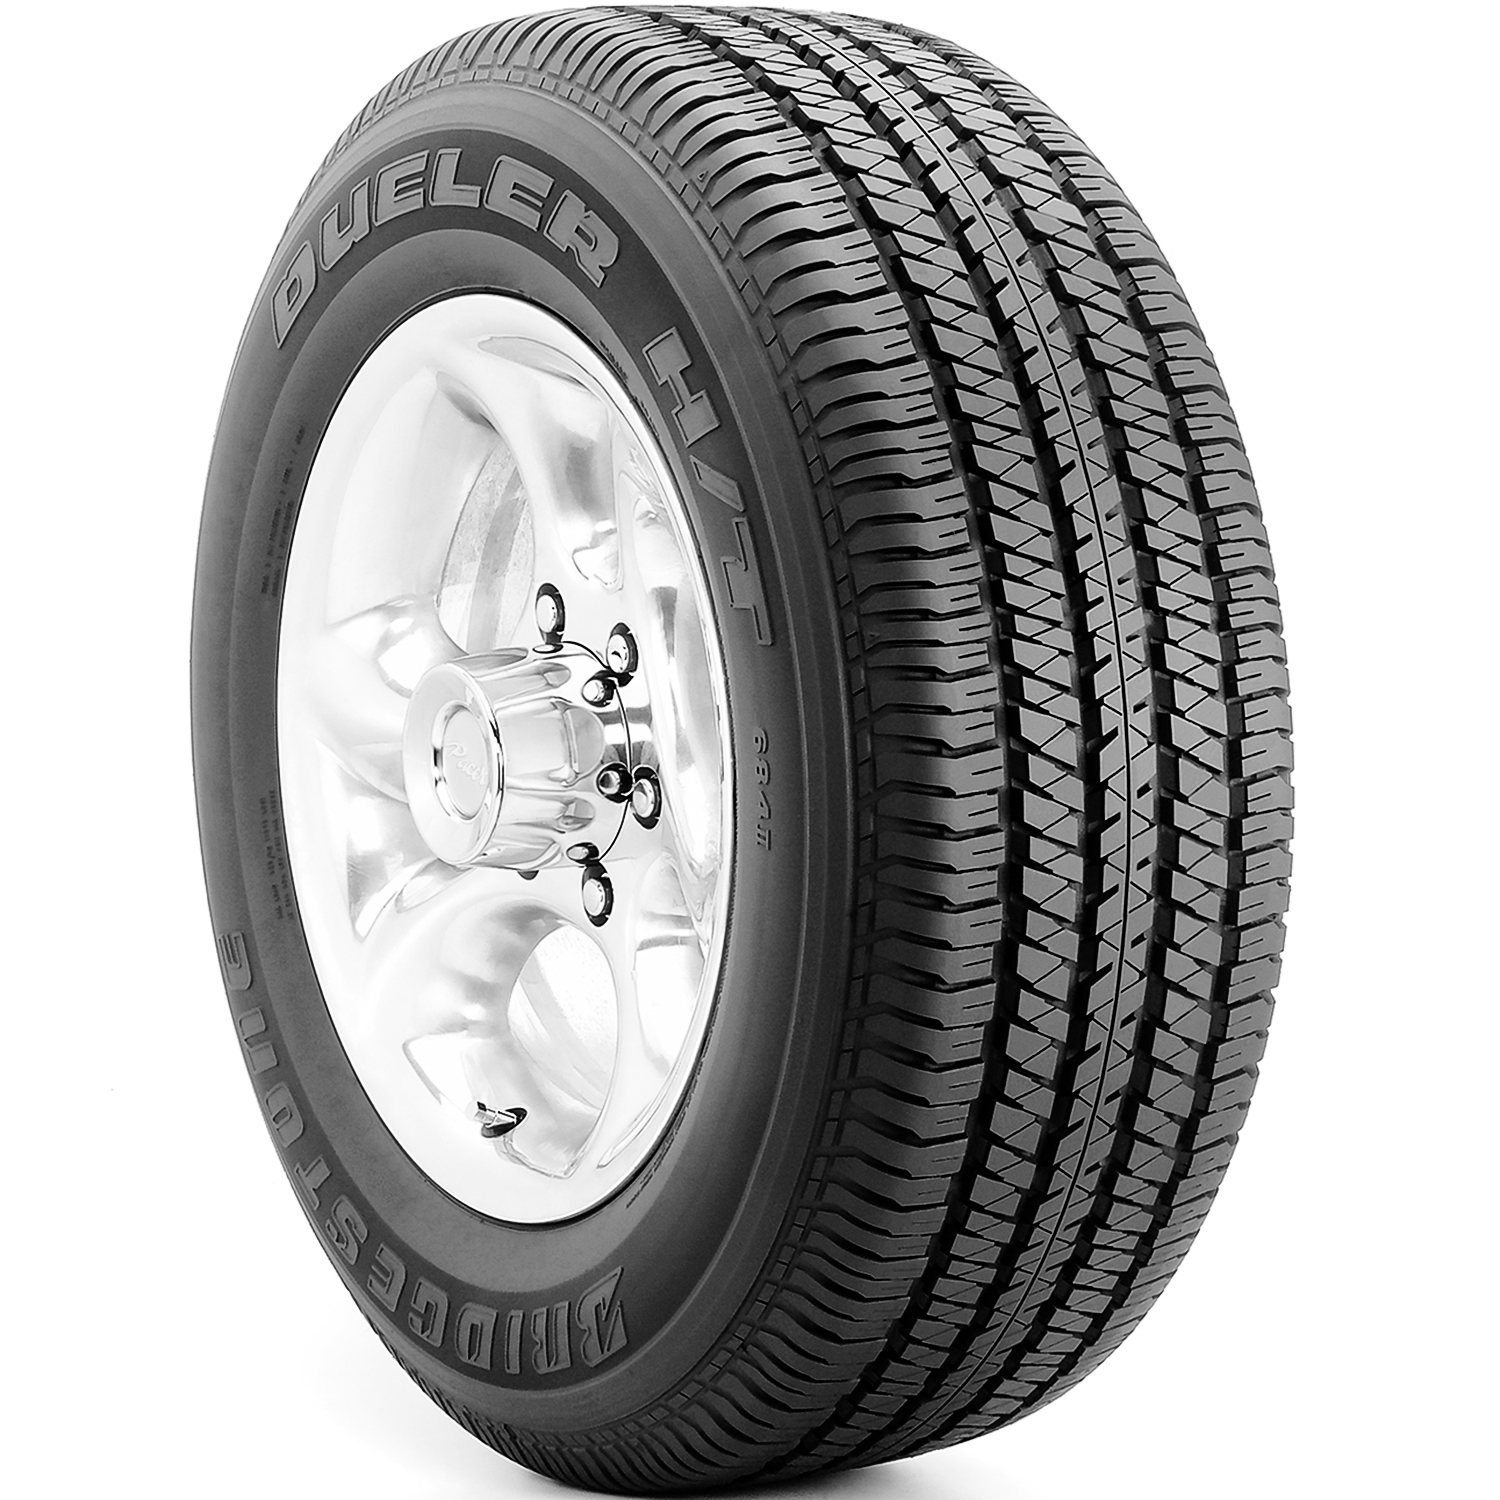 Bridgestone Dueler H/T 684 II (OE) 265/70R17 113S AS A/S All Season Tire